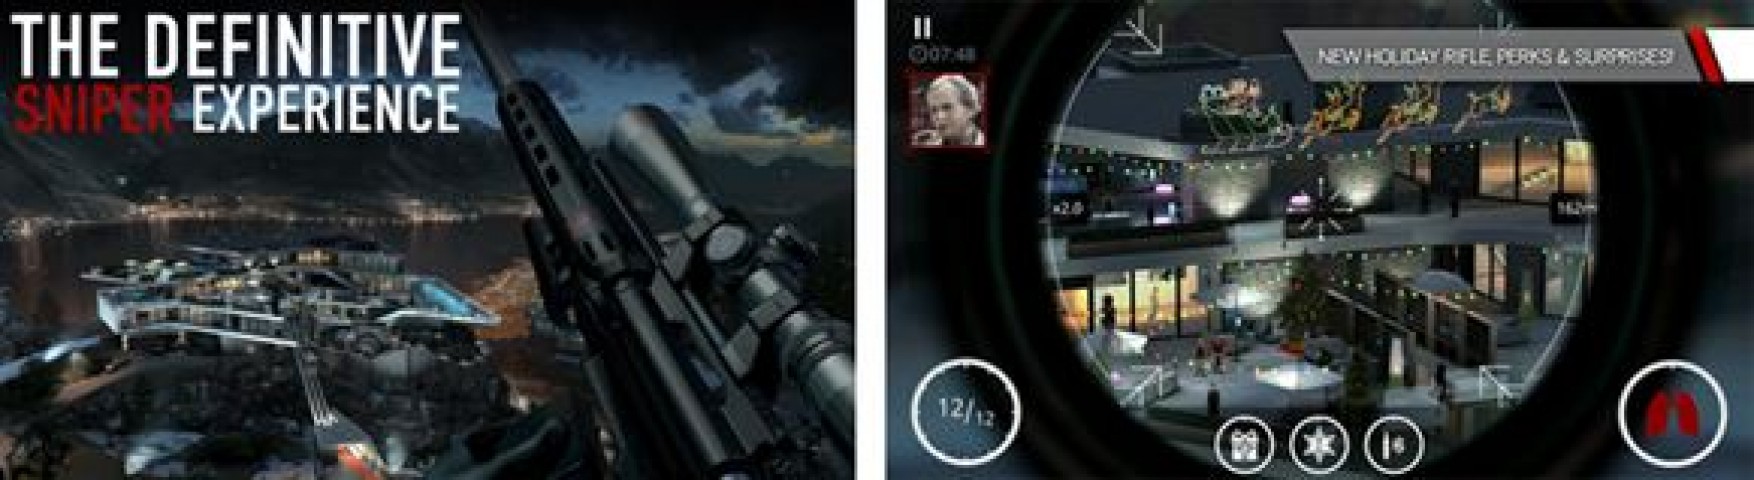 hitman-sniper-apk-download.jpg